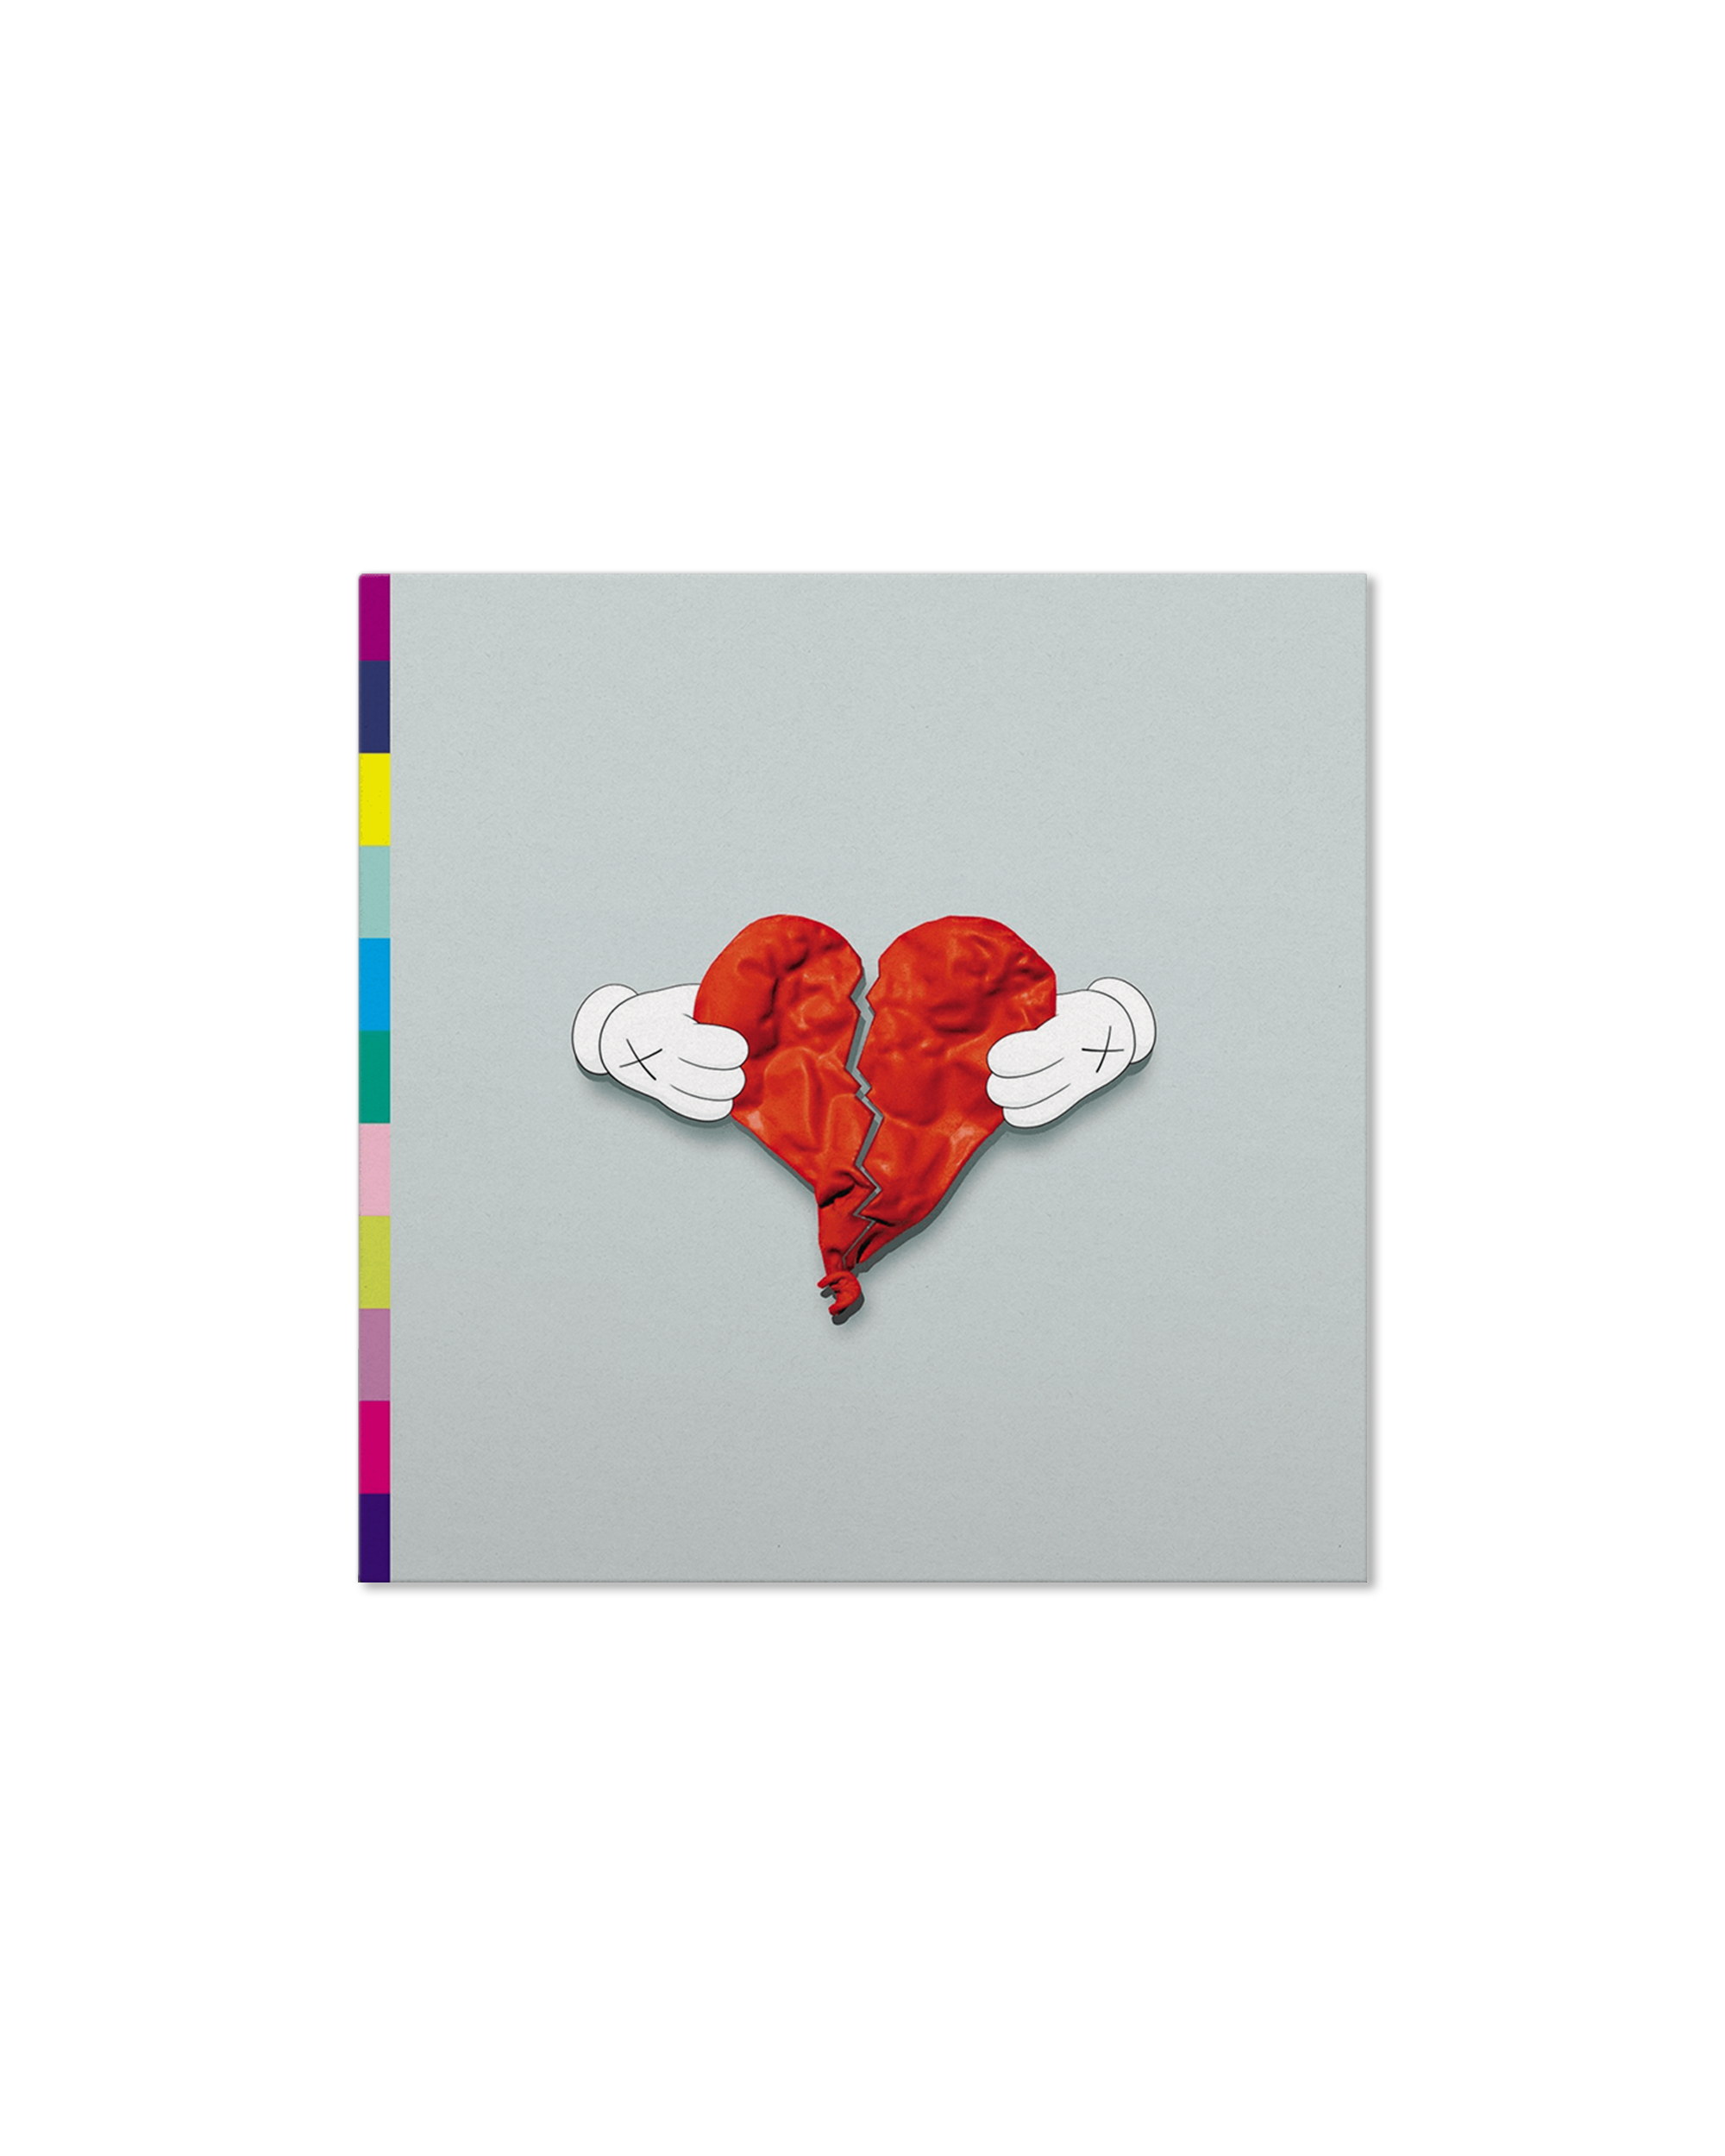 808 & Heartbreak (Deluxe Edition)